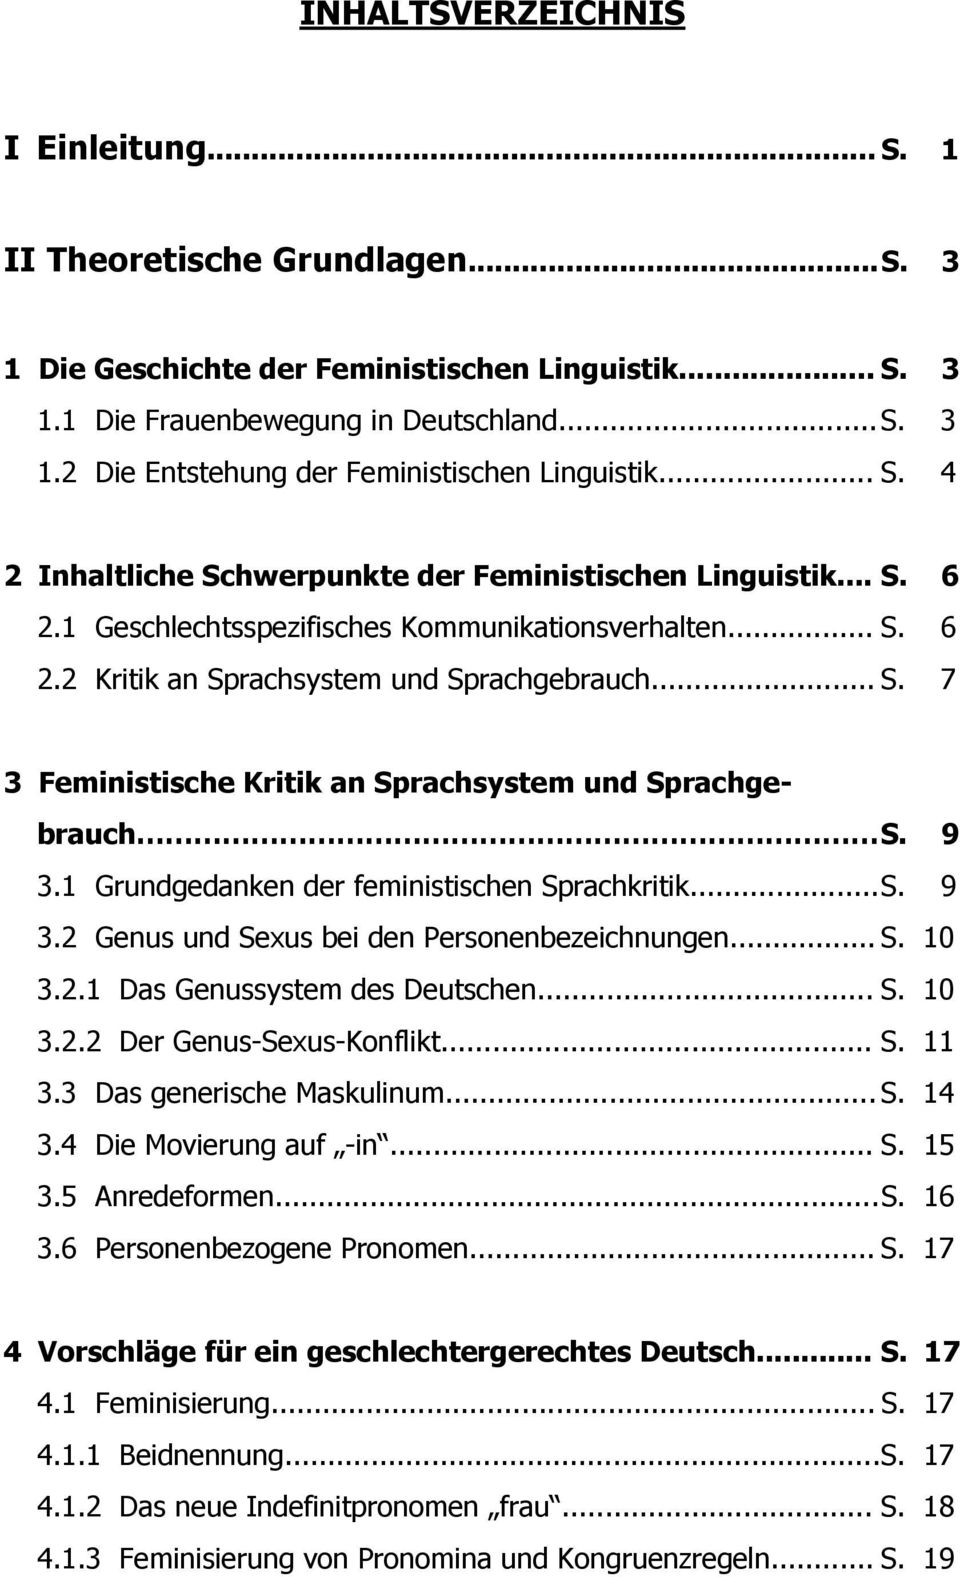 9 3.1 Grundgedanken der feministischen Sprachkritik... S. 9 3.2 Genus und Sexus bei den Personenbezeichnungen... S. 10 3.2.1 Das Genussystem des Deutschen... S. 10 3.2.2 Der Genus-Sexus-Konflikt... S. 11 3.